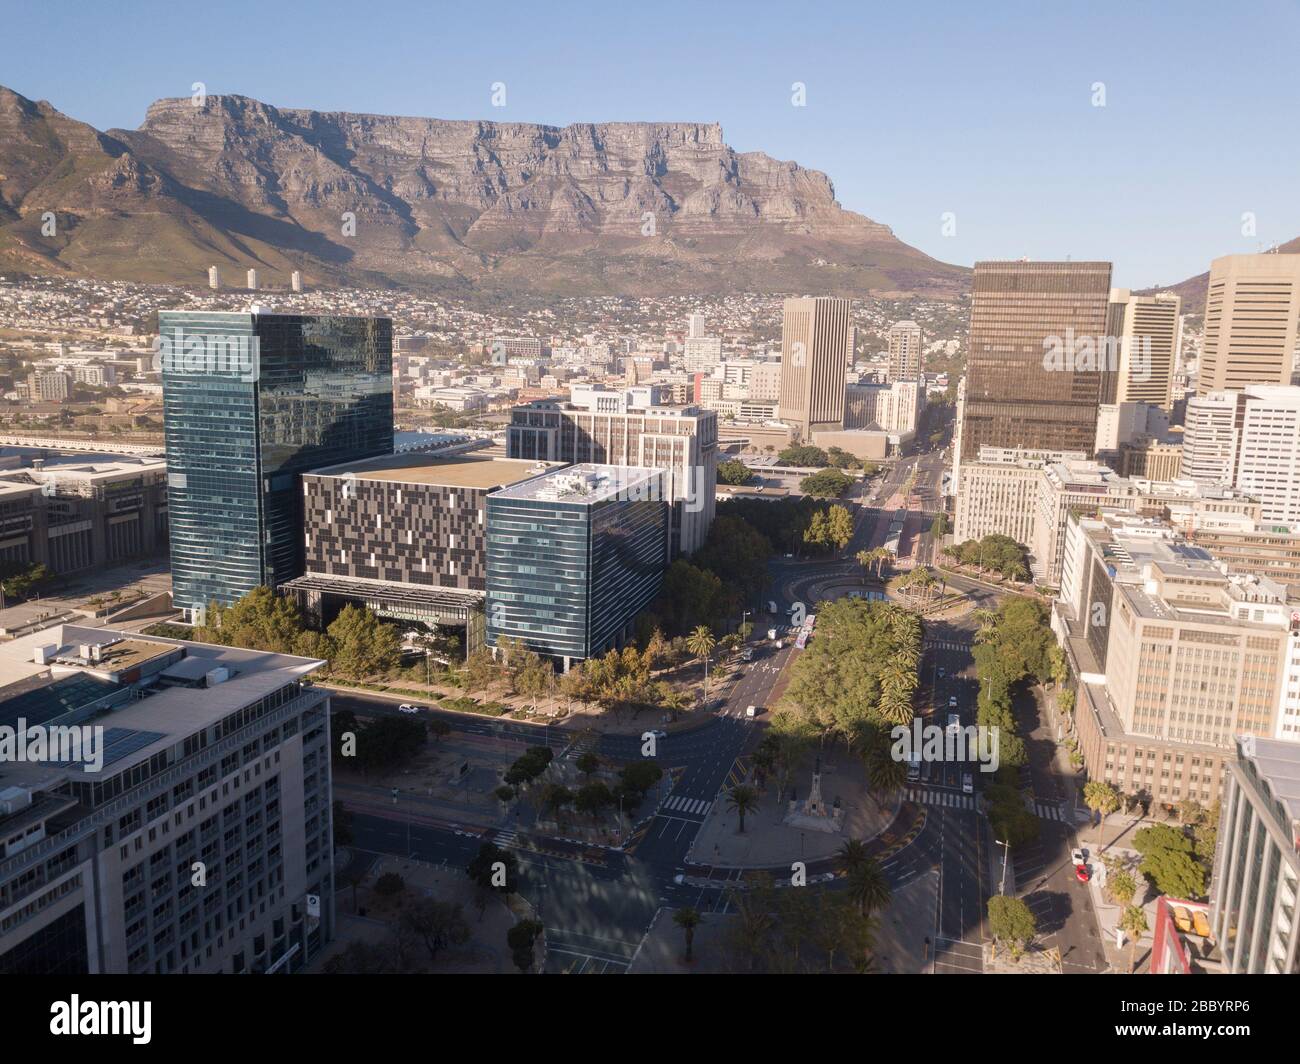 2 avril 2020 - le Cap, Afrique du Sud : vue aérienne des rues vides du Cap, Afrique du Sud pendant le verrouillage du Covid 19. Banque D'Images